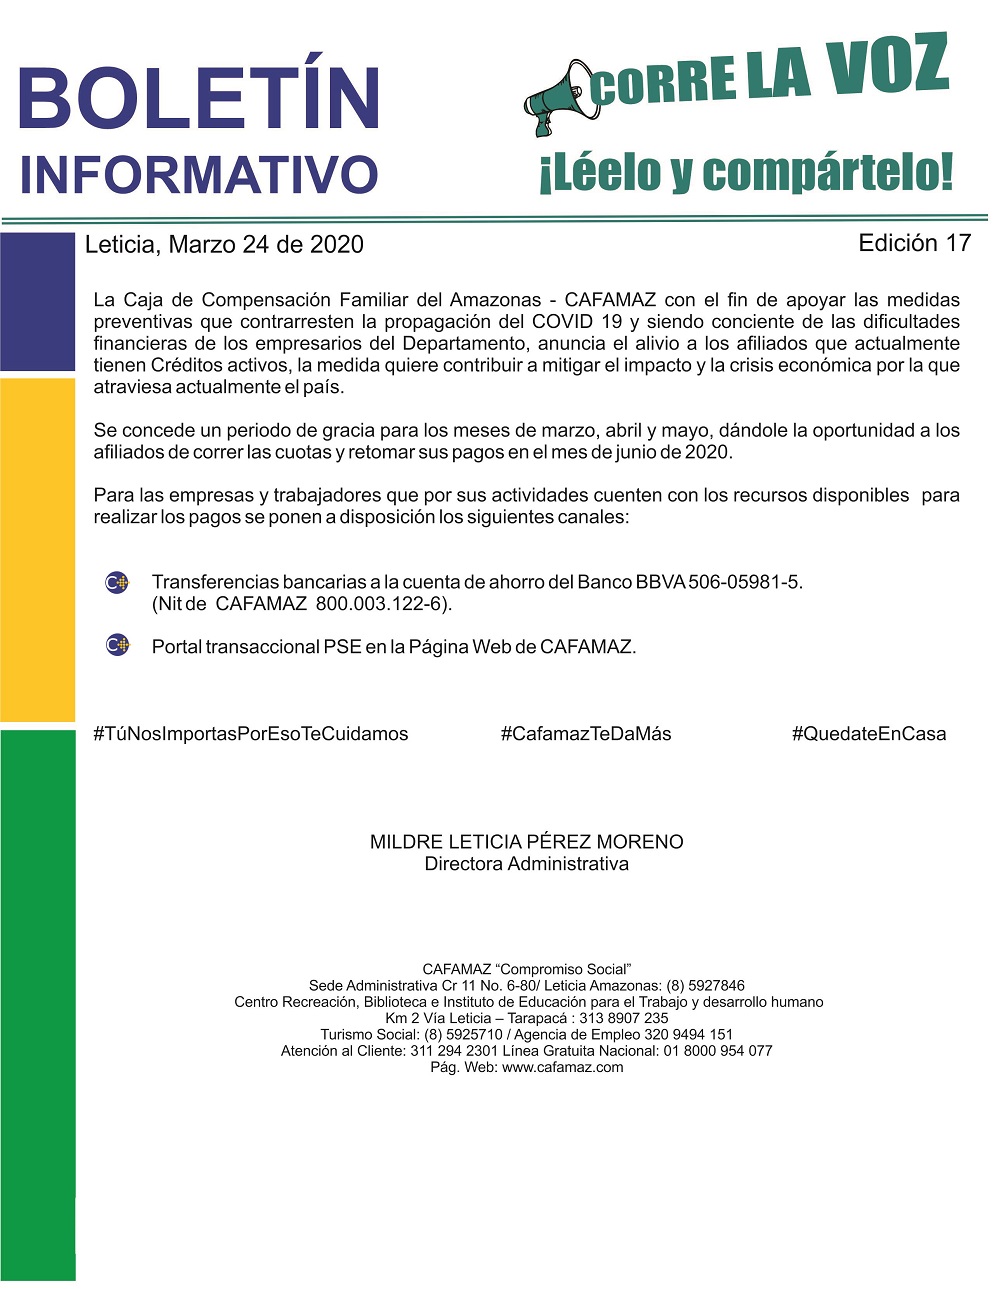 Boletín Informativo Edición 17 – CRÉDITO SOCIAL | Cafamaz, 2020